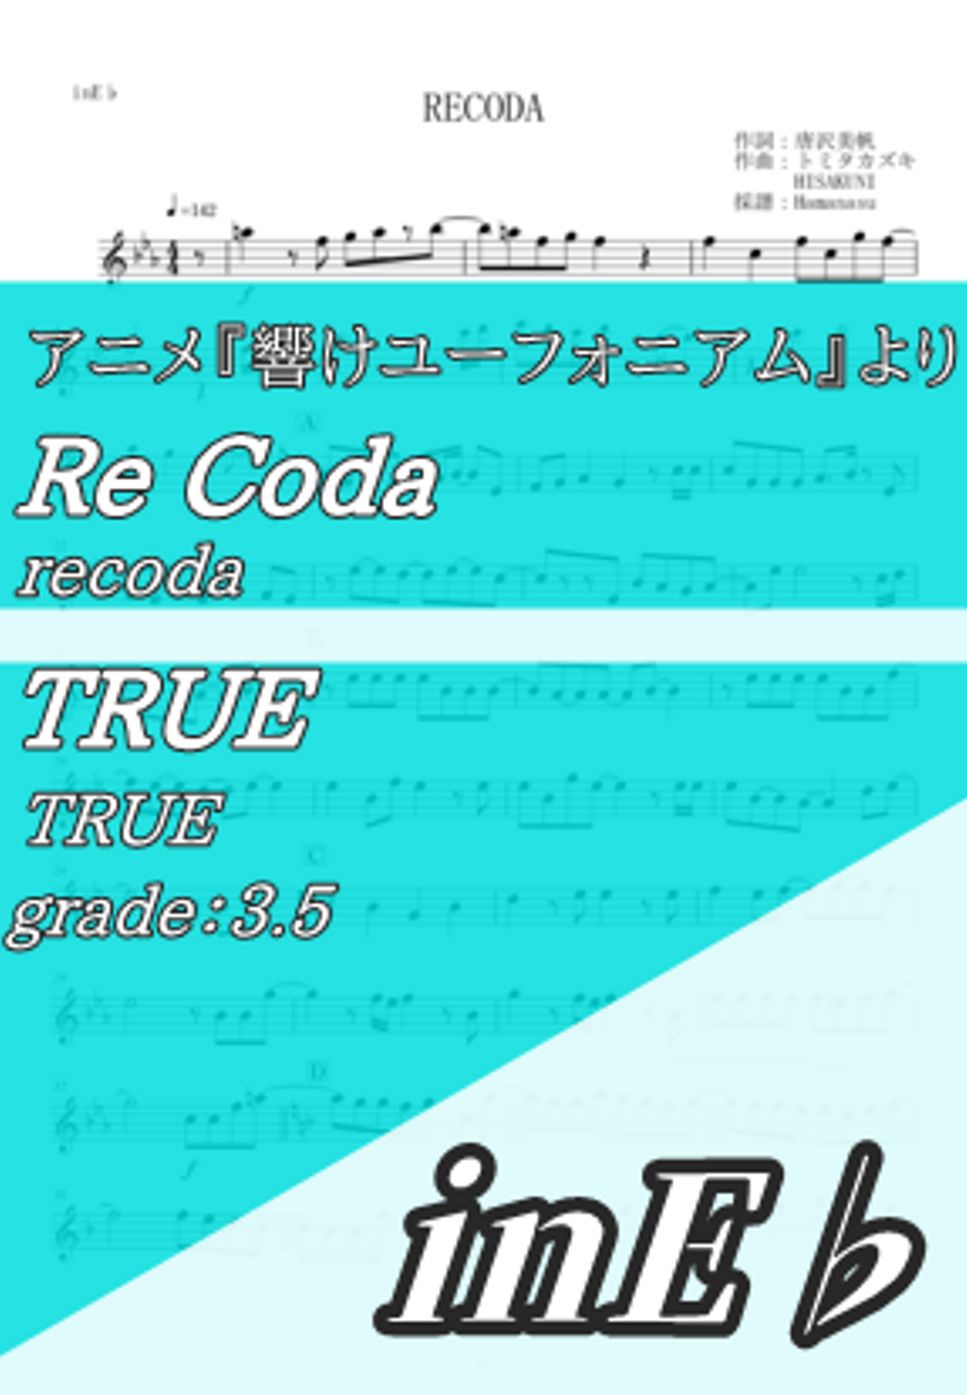 TRUE - RECODA (inE♭) by Hamanasu